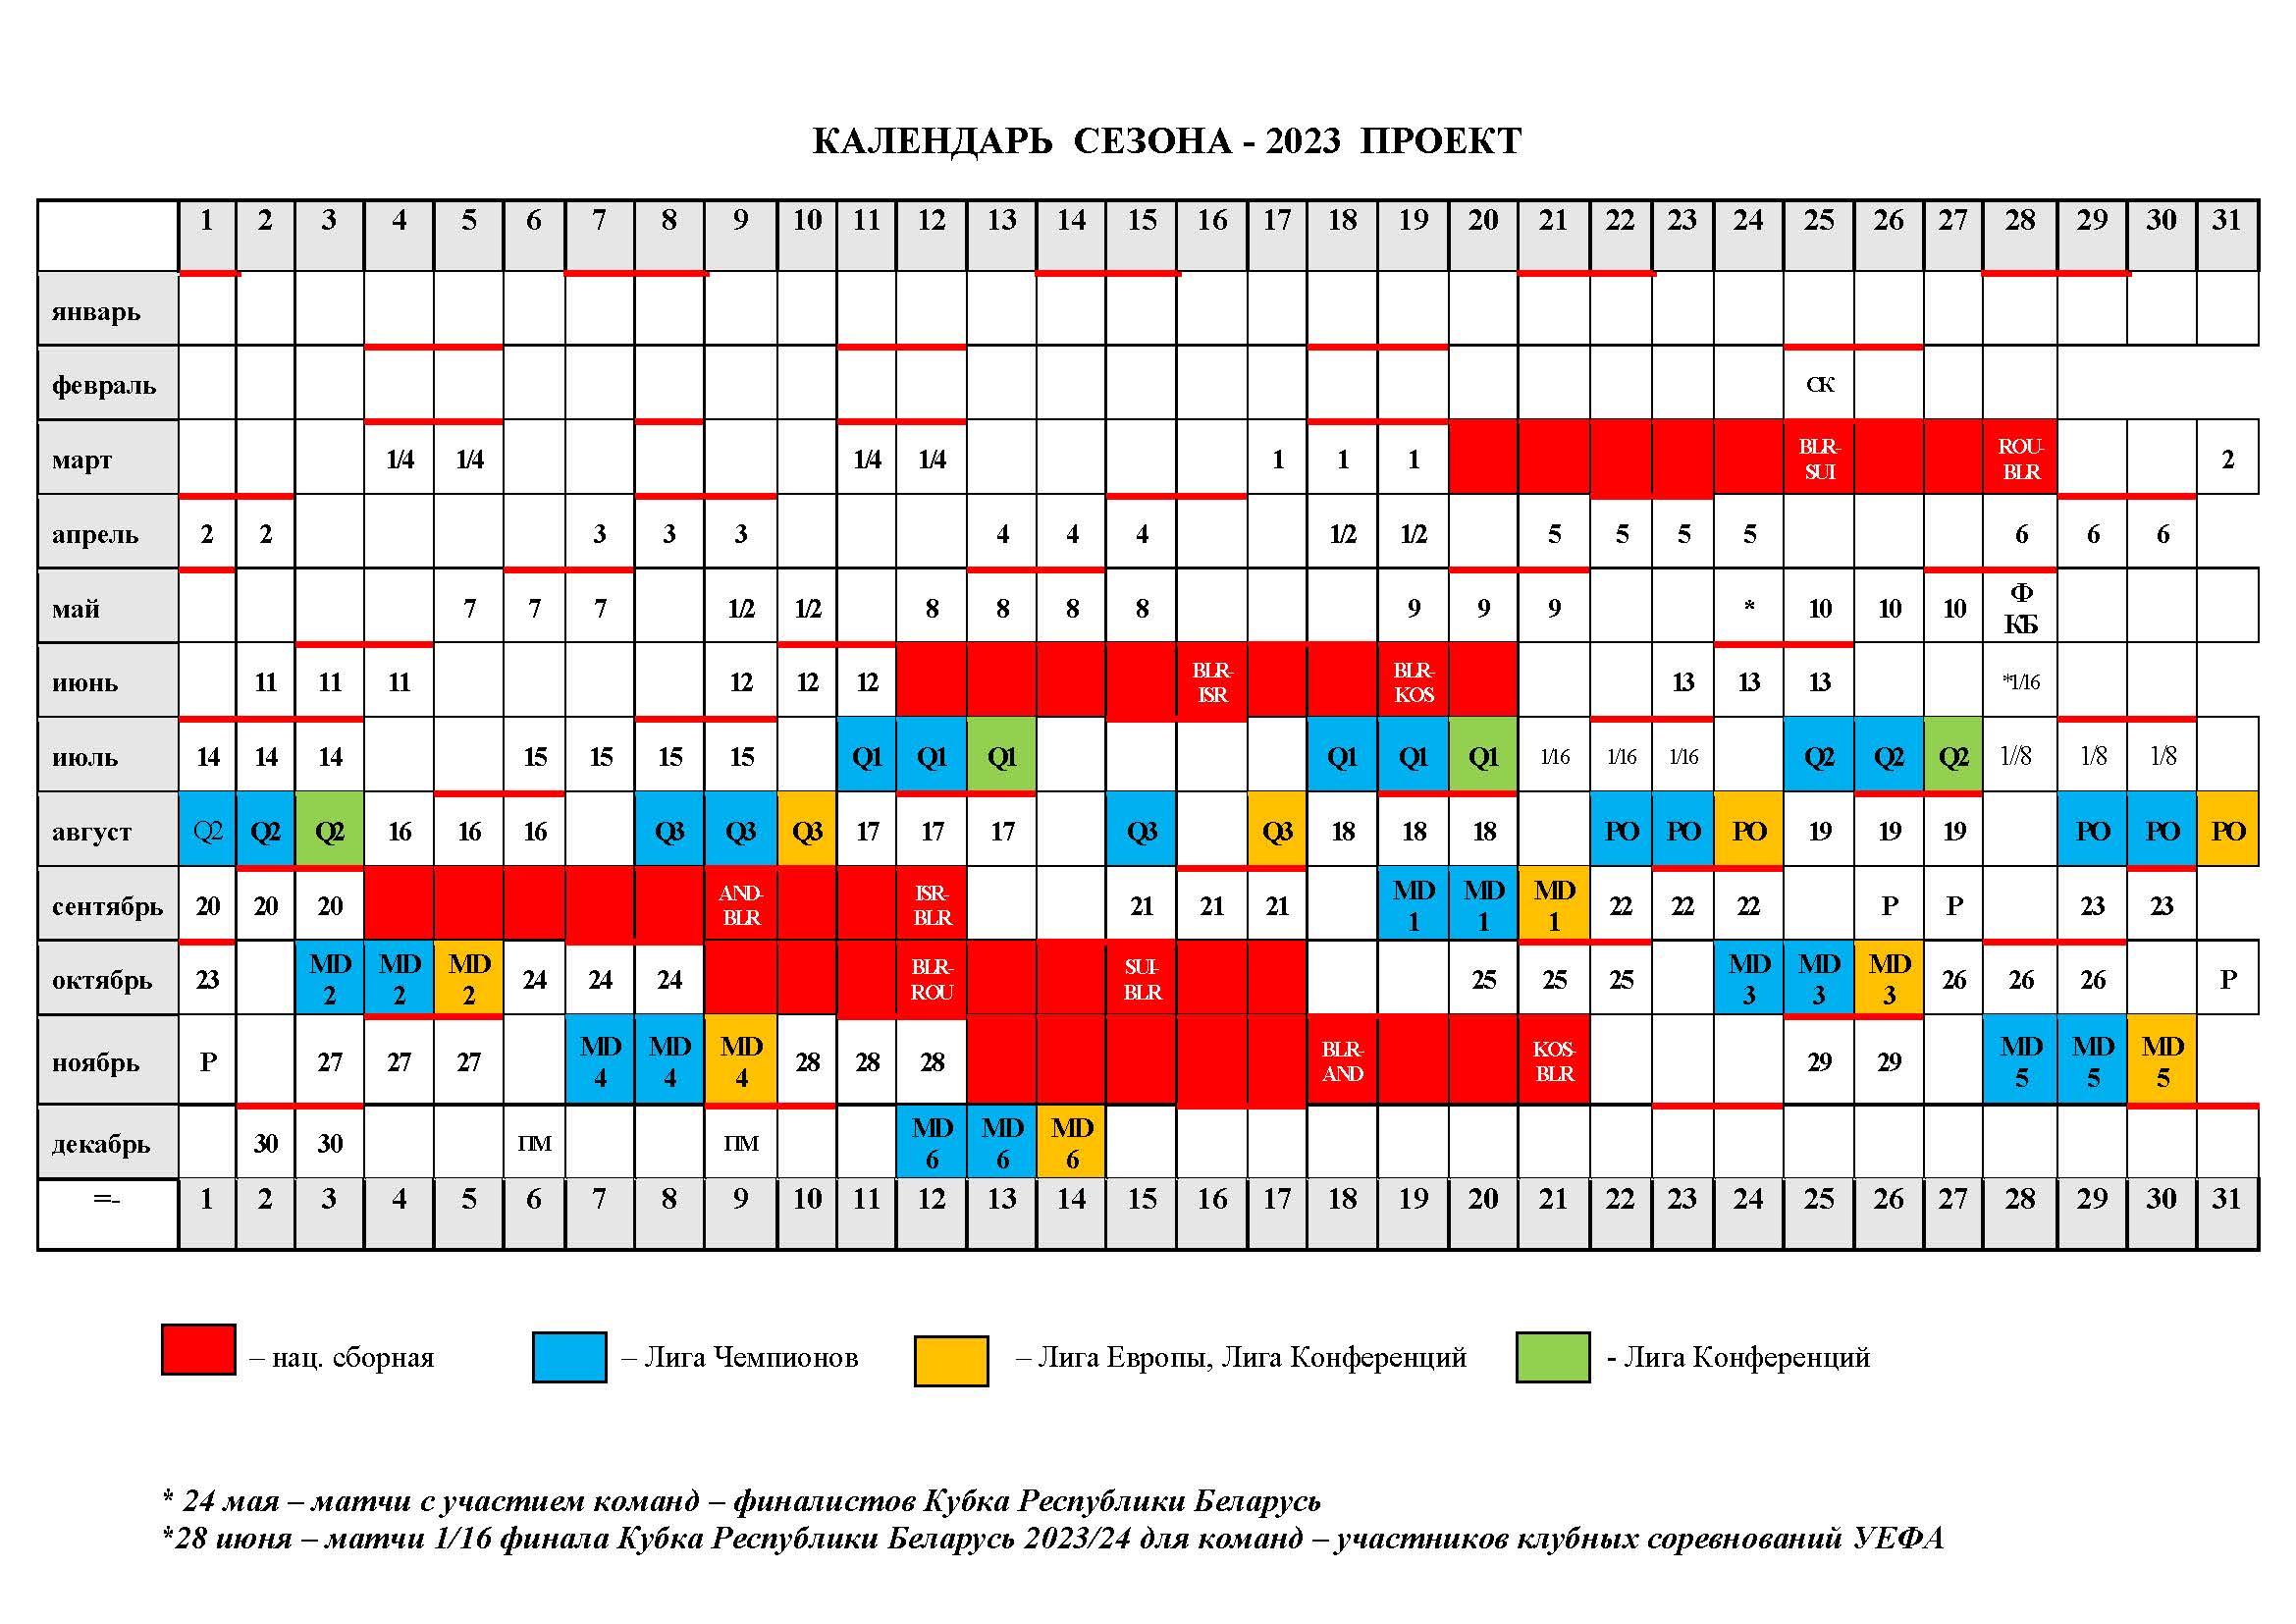 Календарь первый лига россия. Календарь проекта. Высшая лига 2023.